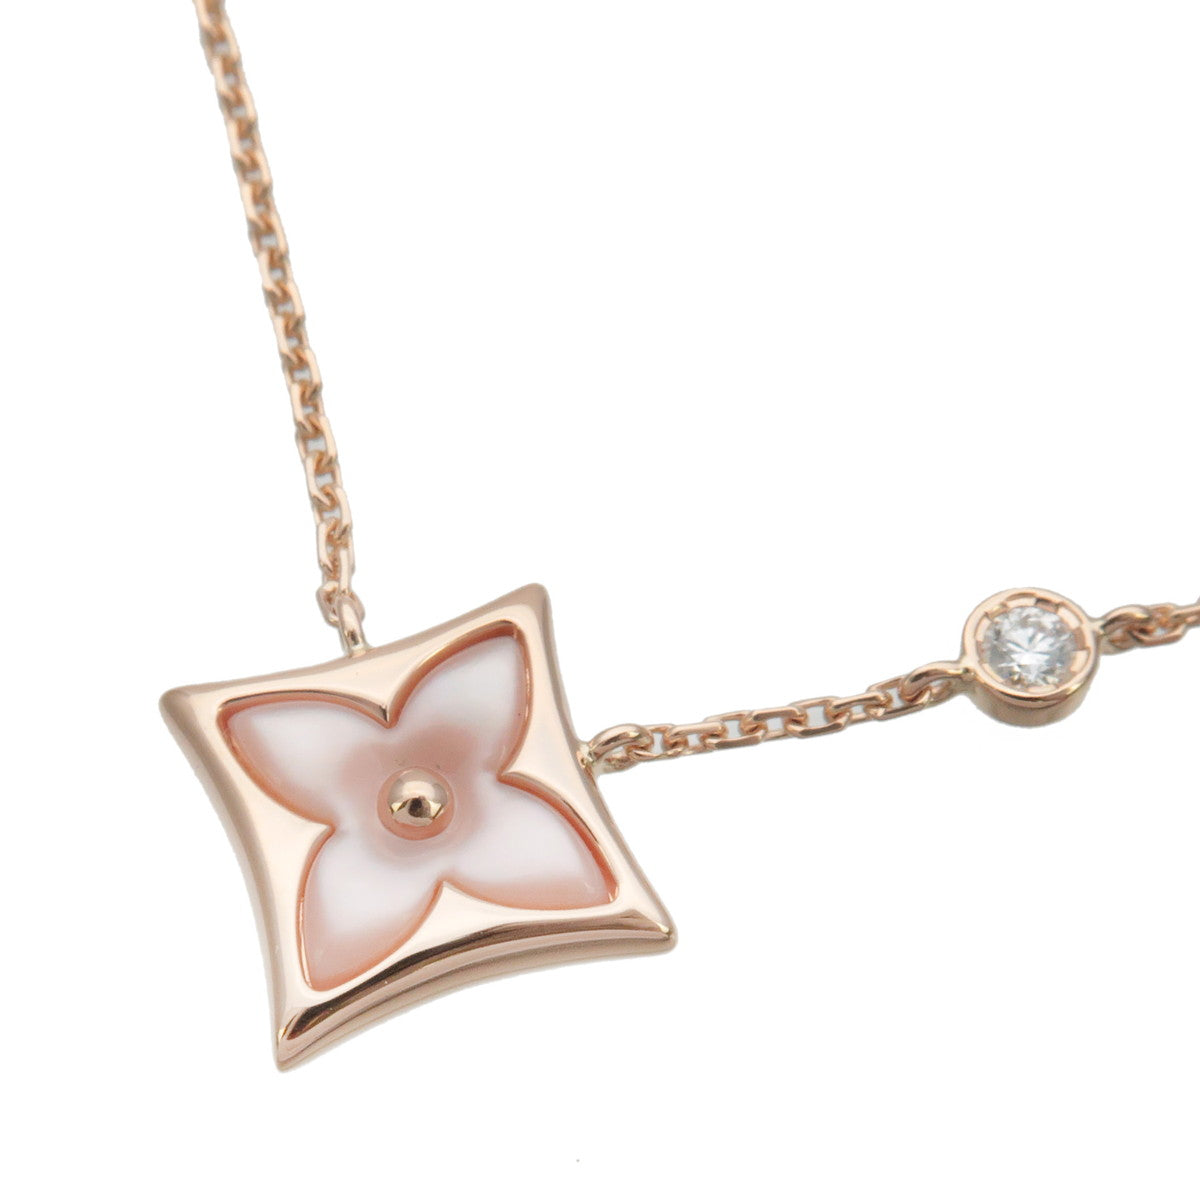 Autentic-Louis-Vuitton-Pandantiff-Star-Blossom-Shell-Necklace-PG